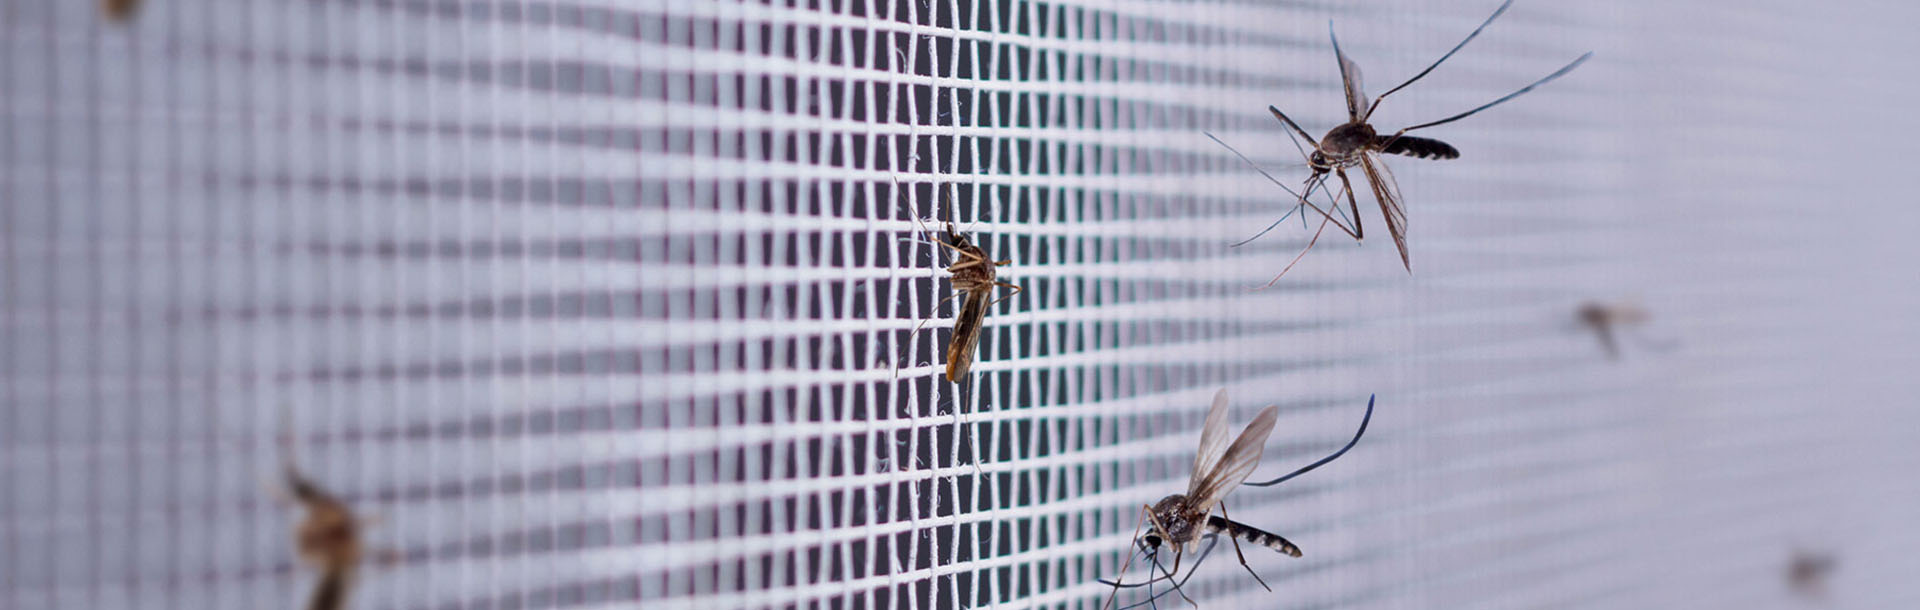 Moustiques sur la moustiquaire de la fenêtre